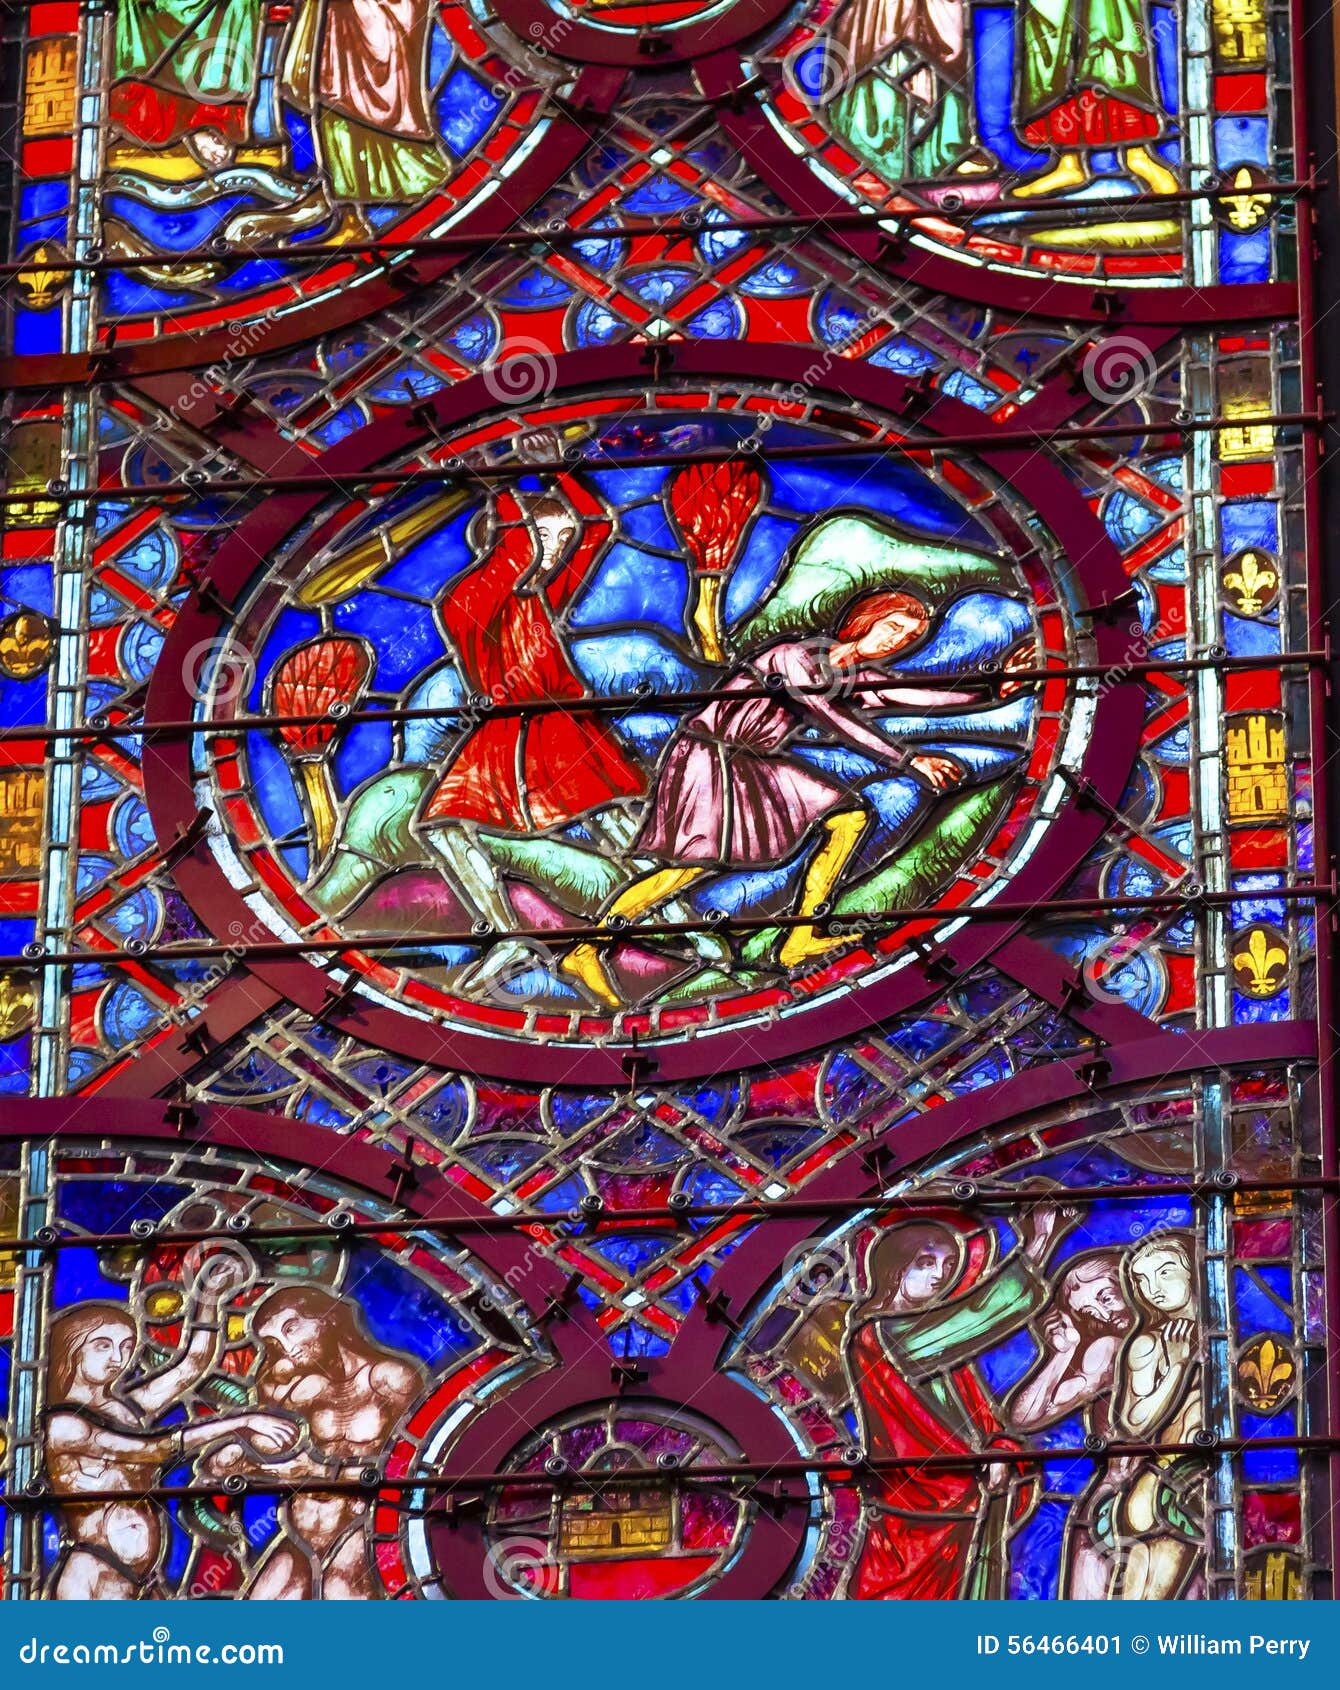 cain able adam eve stained glass sainte chapelle paris france